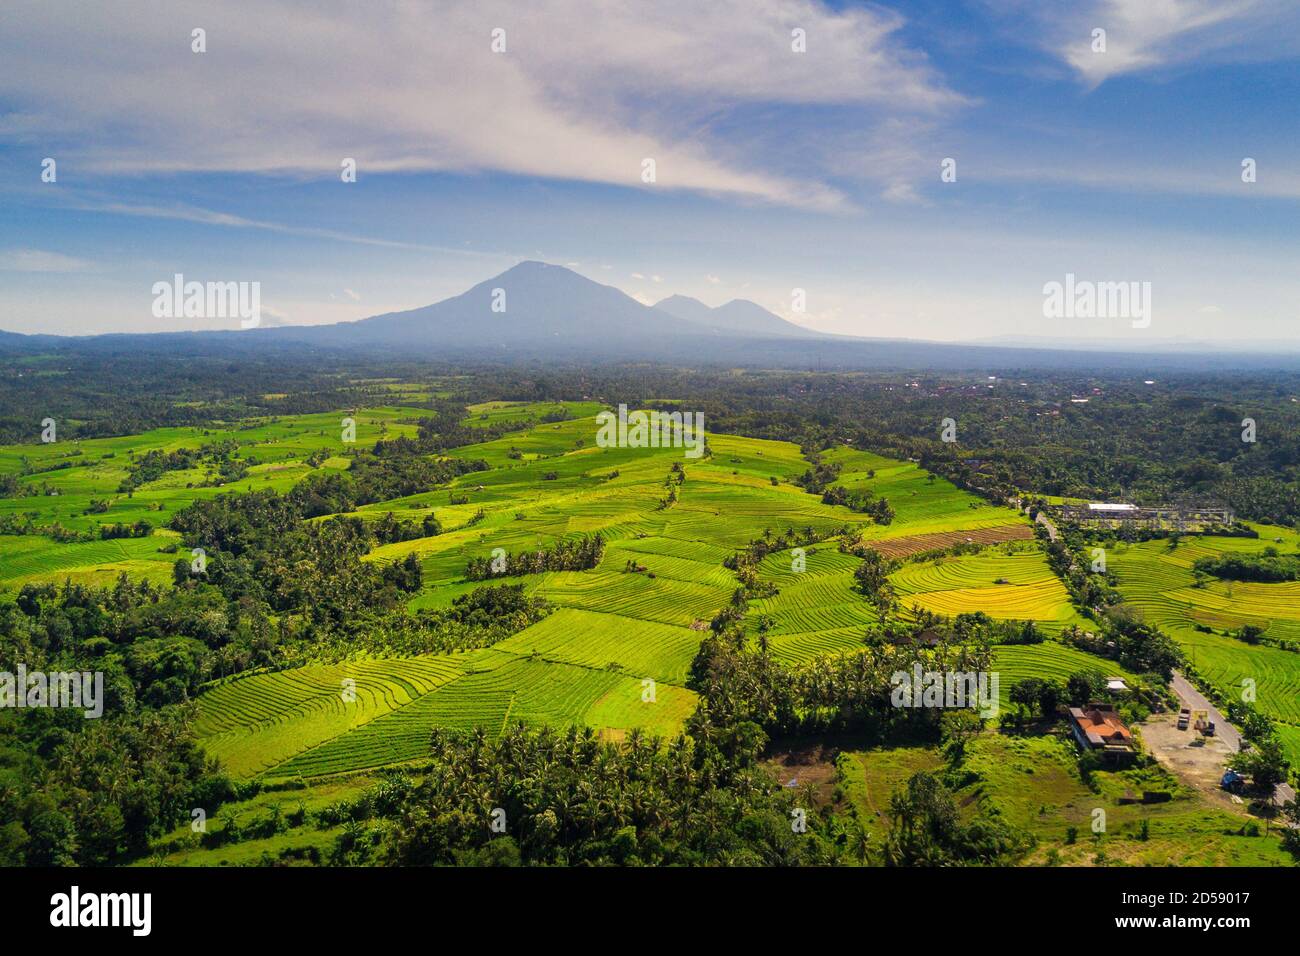 Vue aérienne des rizières en terrasse, Tabanan, Bali, Indonésie Banque D'Images